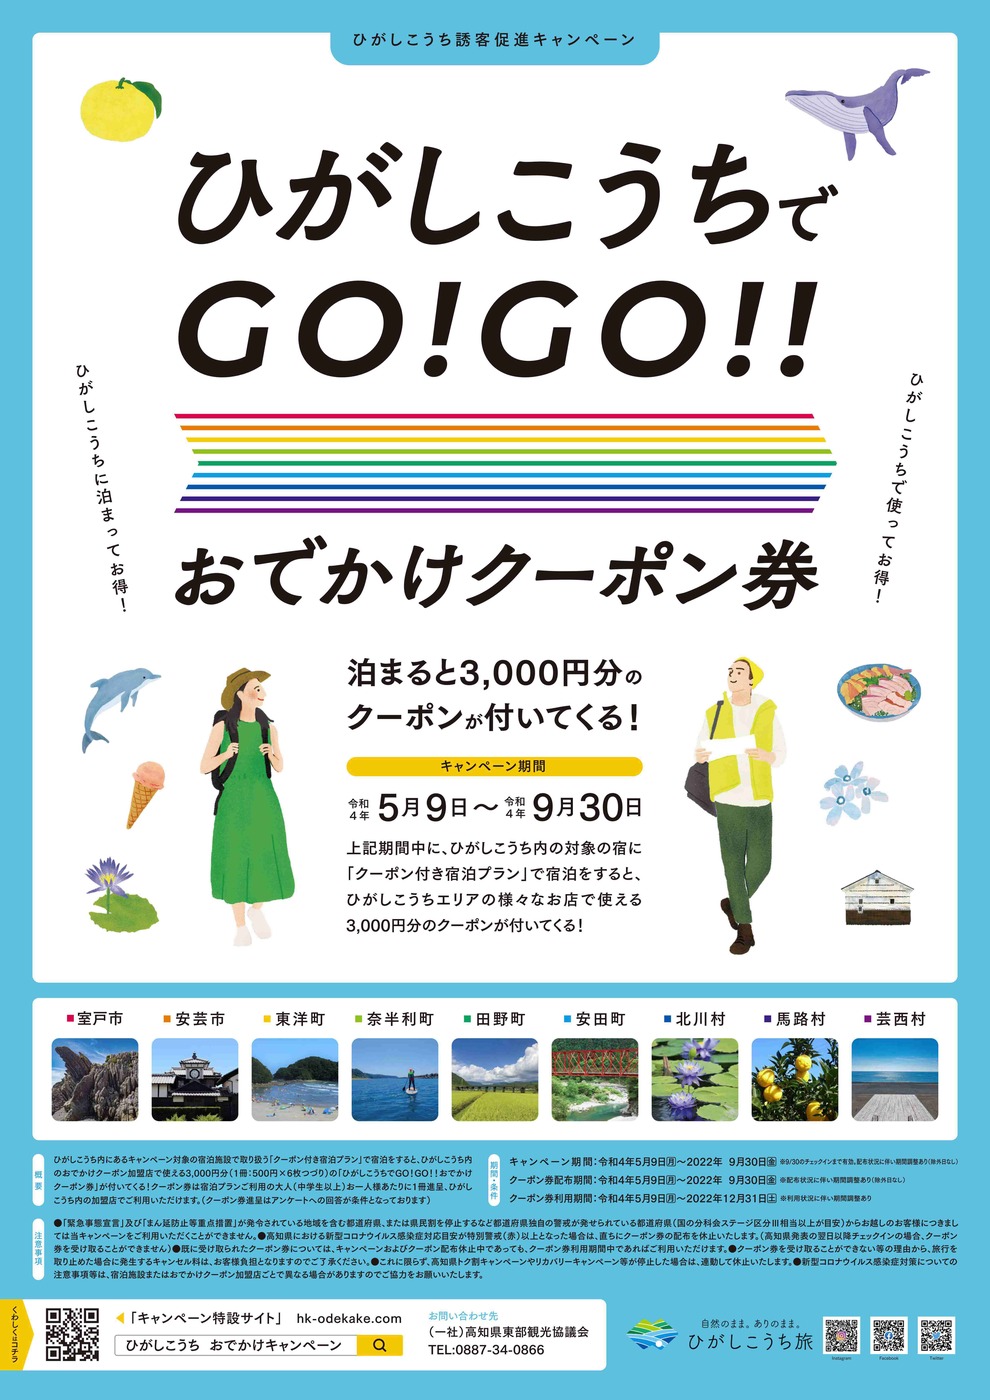 ひがしこうちでGO！GO！！おでかけクーポン券 | トピック一覧 | 高知県観光情報Webサイト「こうち旅ネット」